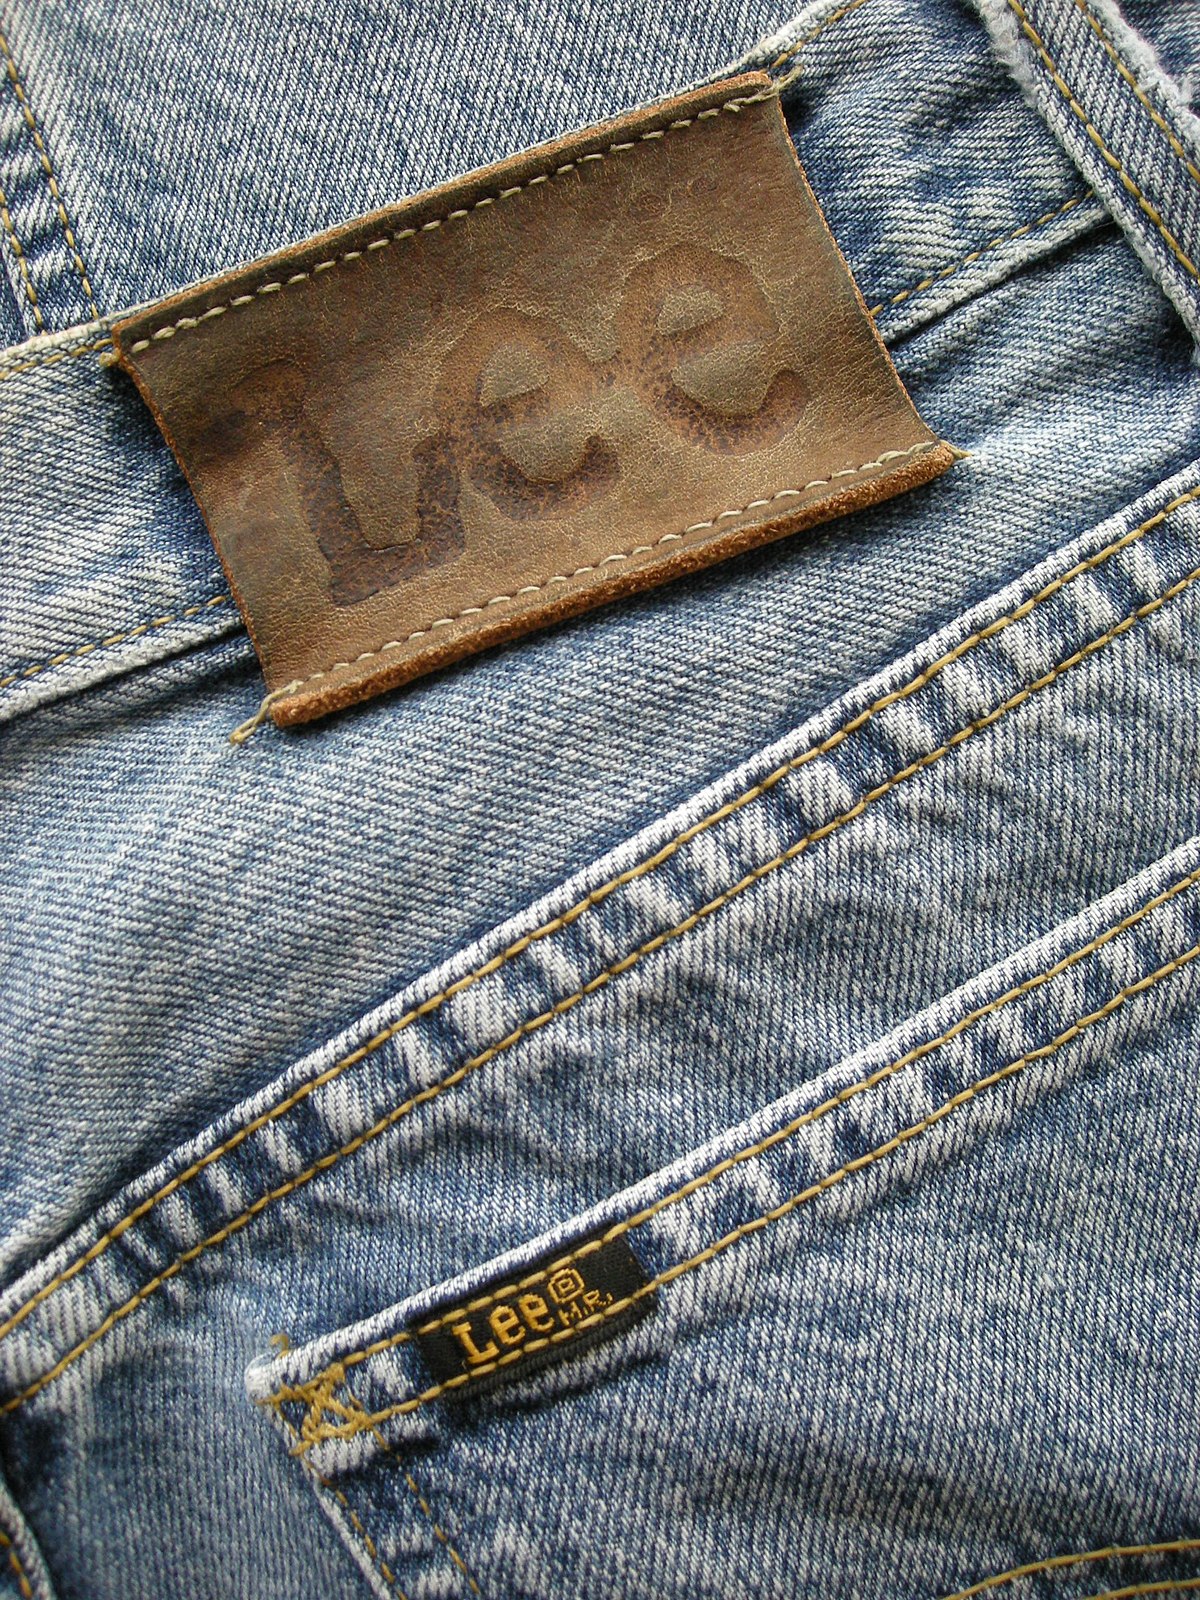 File:Lee jeans.jpg Commons